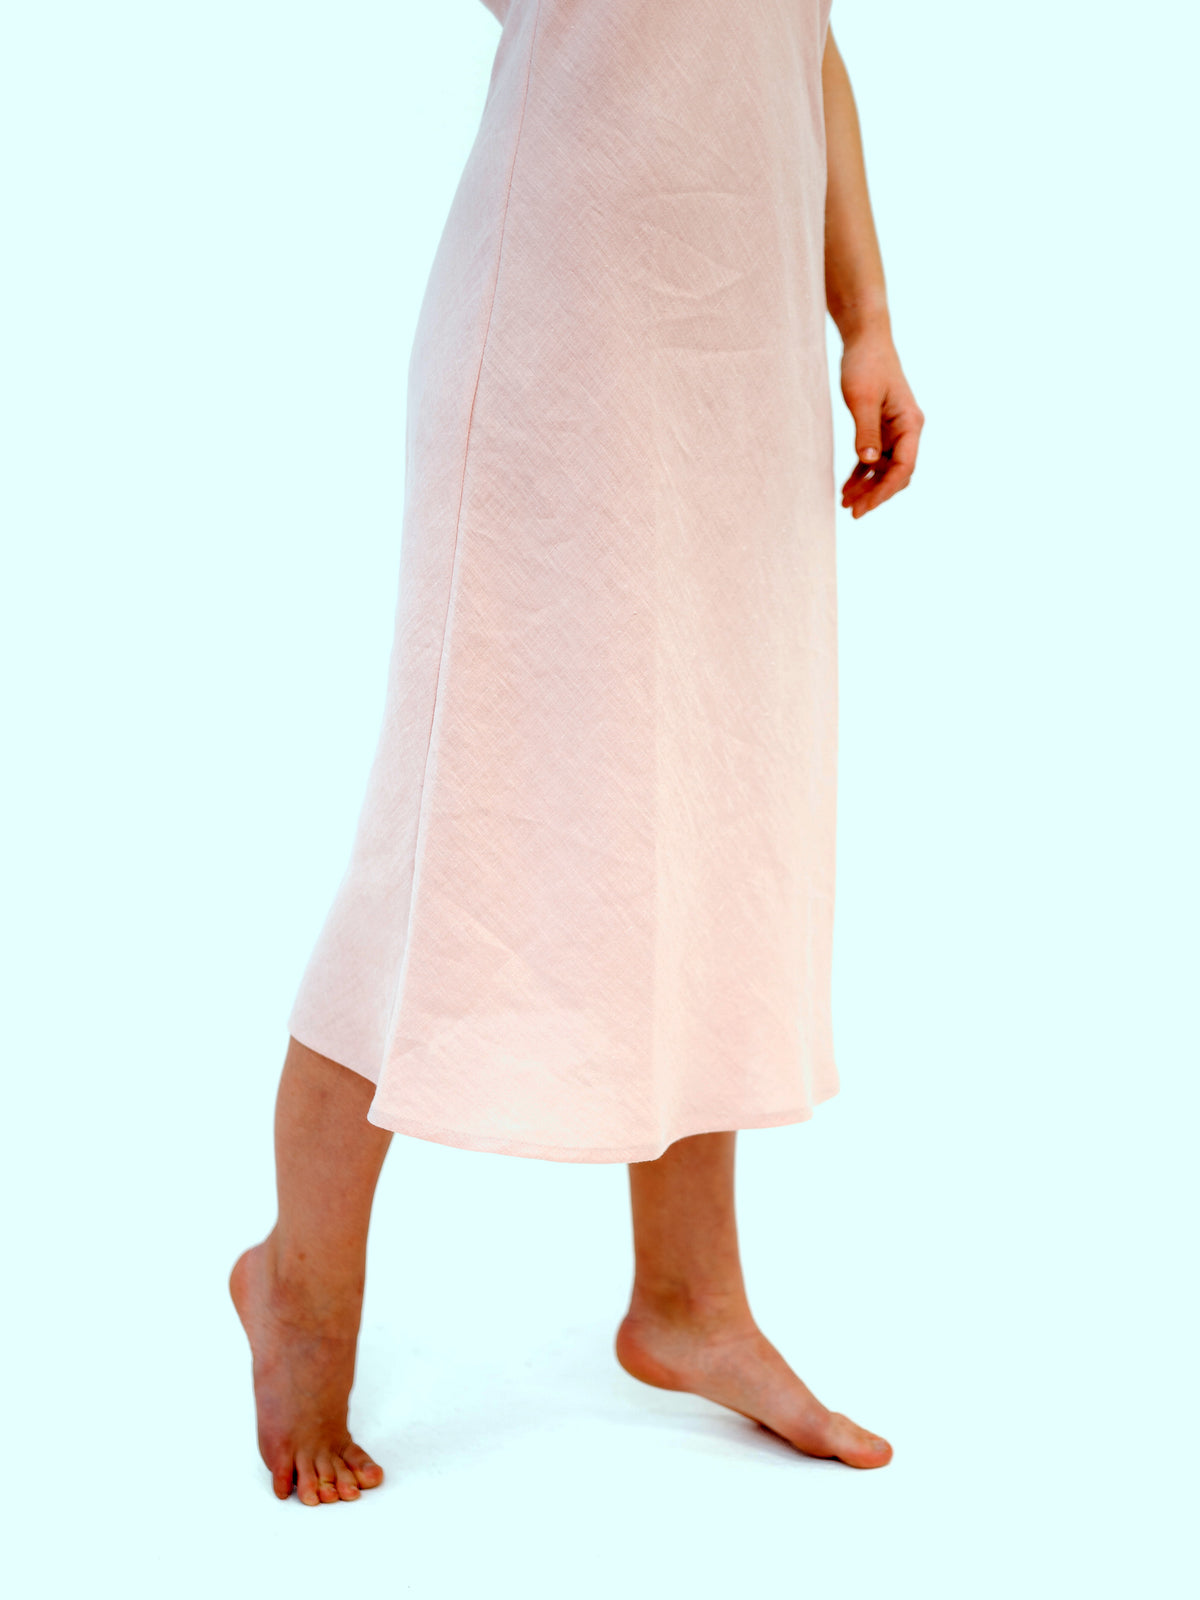 Linen Slip Dress, Simple Lovely off White Linen Base Layer Dress